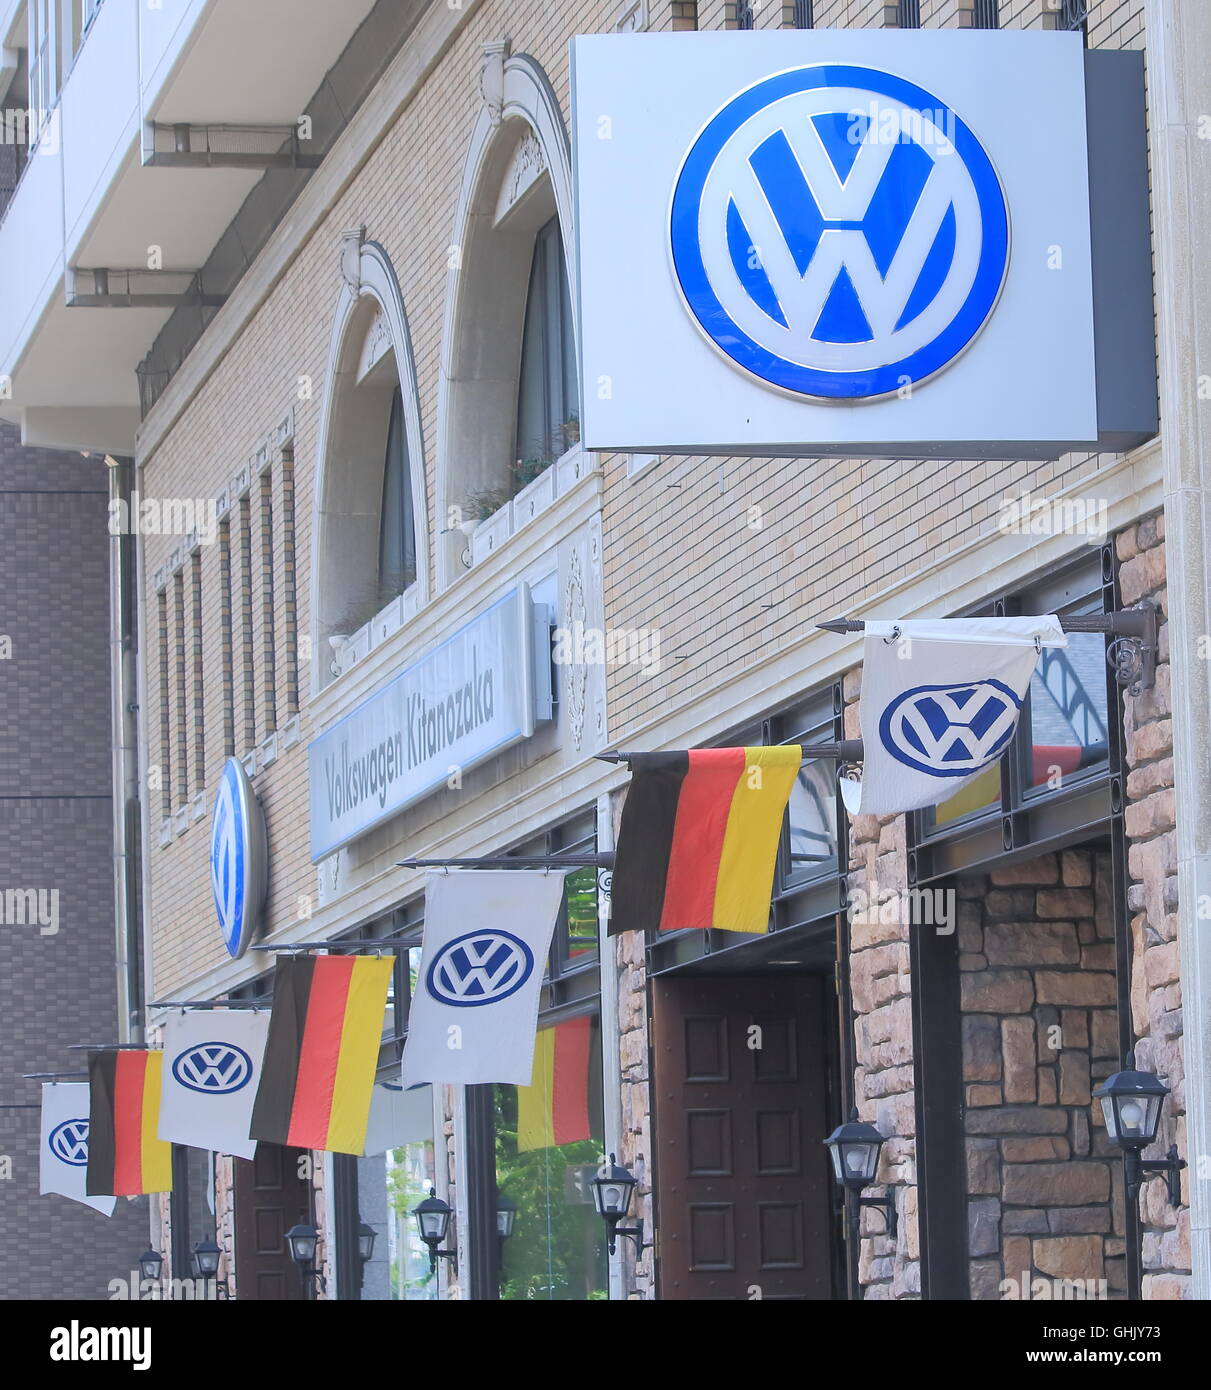 Constructeur automobile allemand Volkswagen store basé à Walfsburg l'Allemagne. Banque D'Images